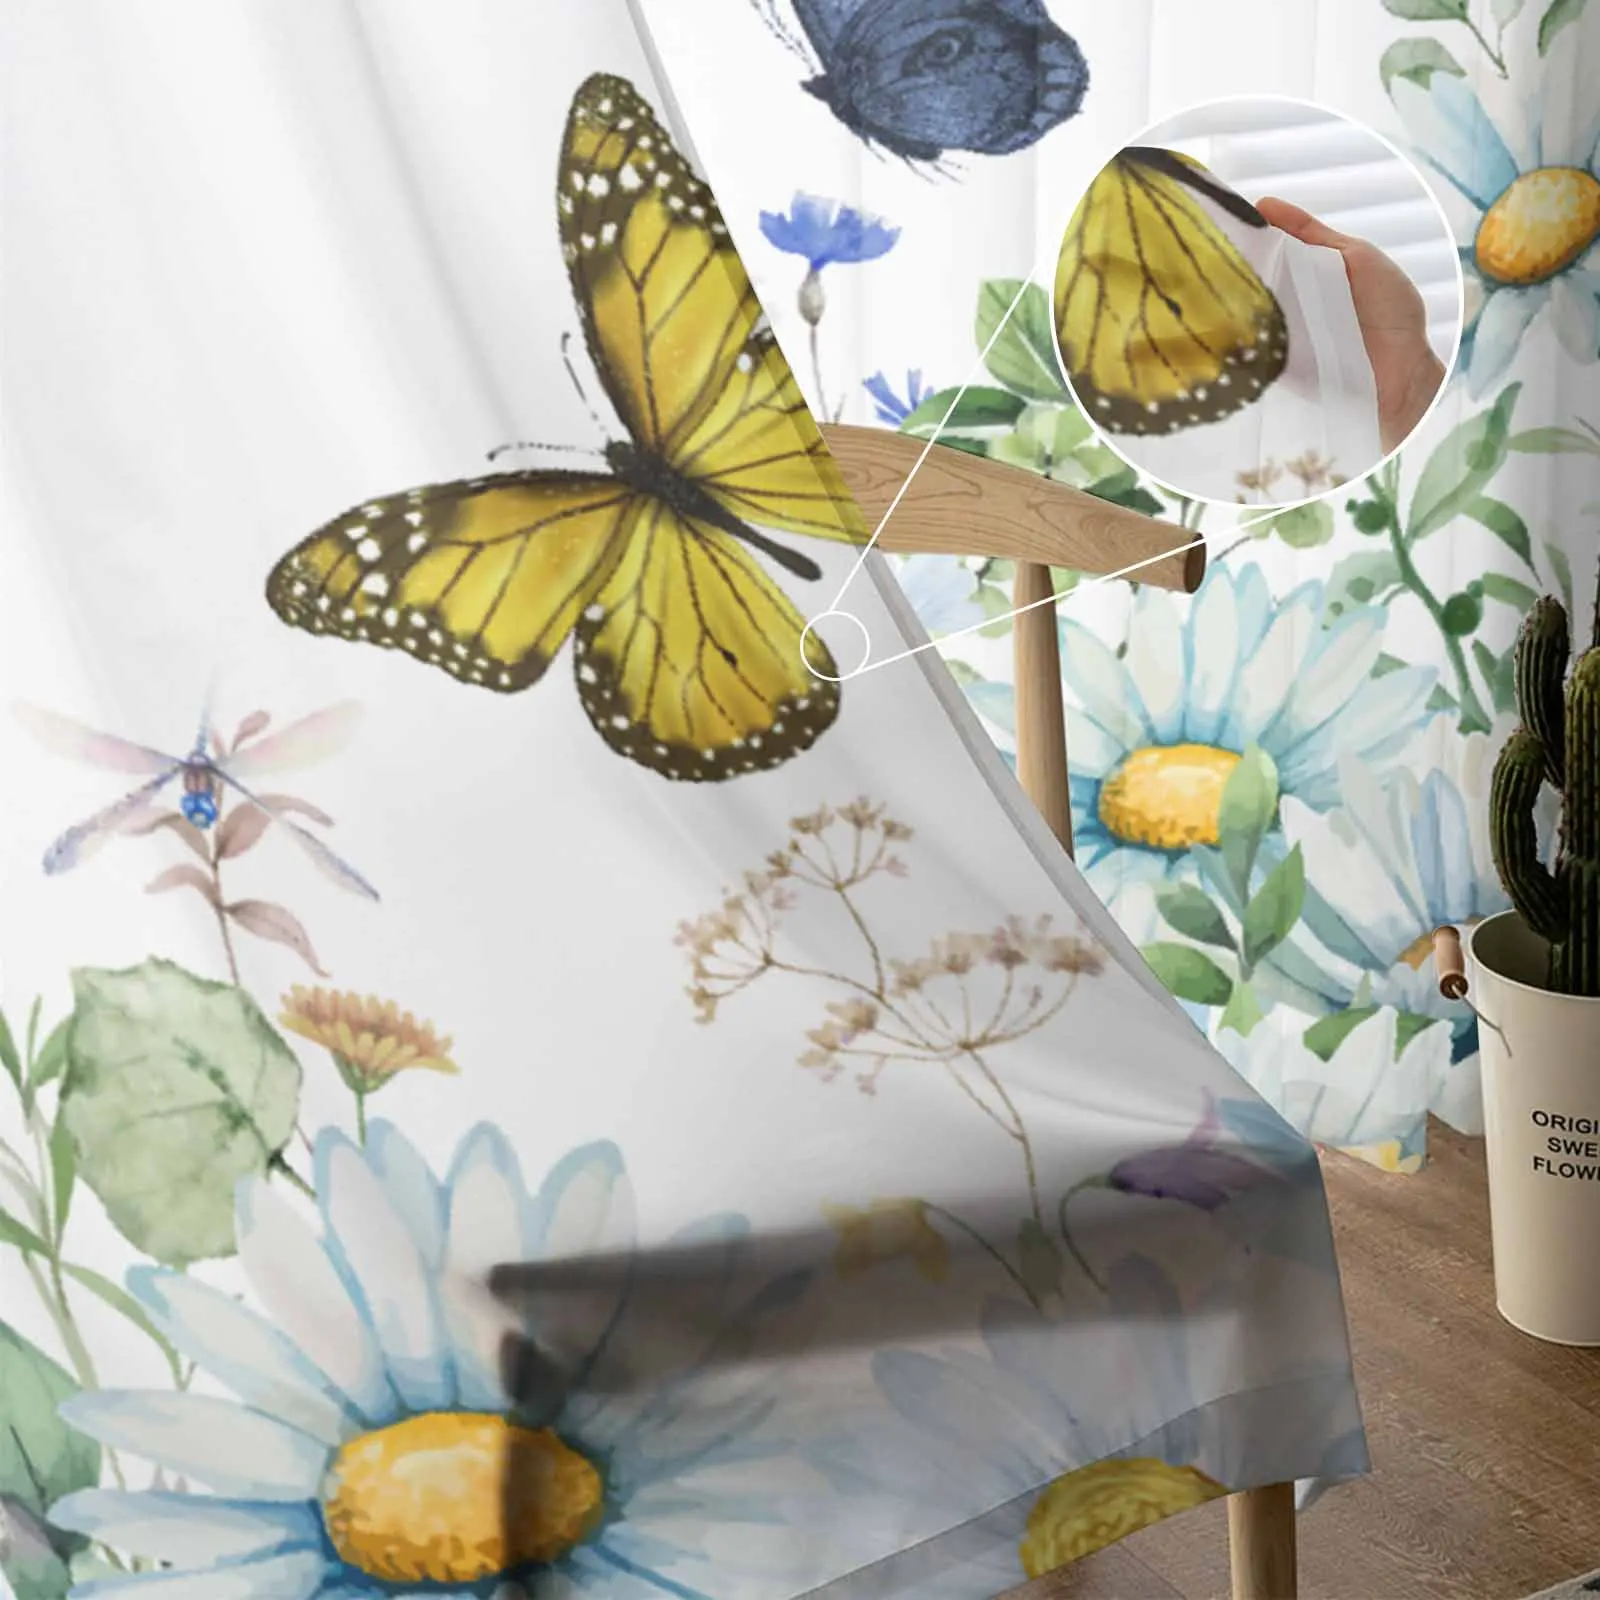 Акварельный цветок, бабочка, тюлевые шторы для гостиной, прозрачная занавеска для спальни, кухонные жалюзи, Вуалевые шторы